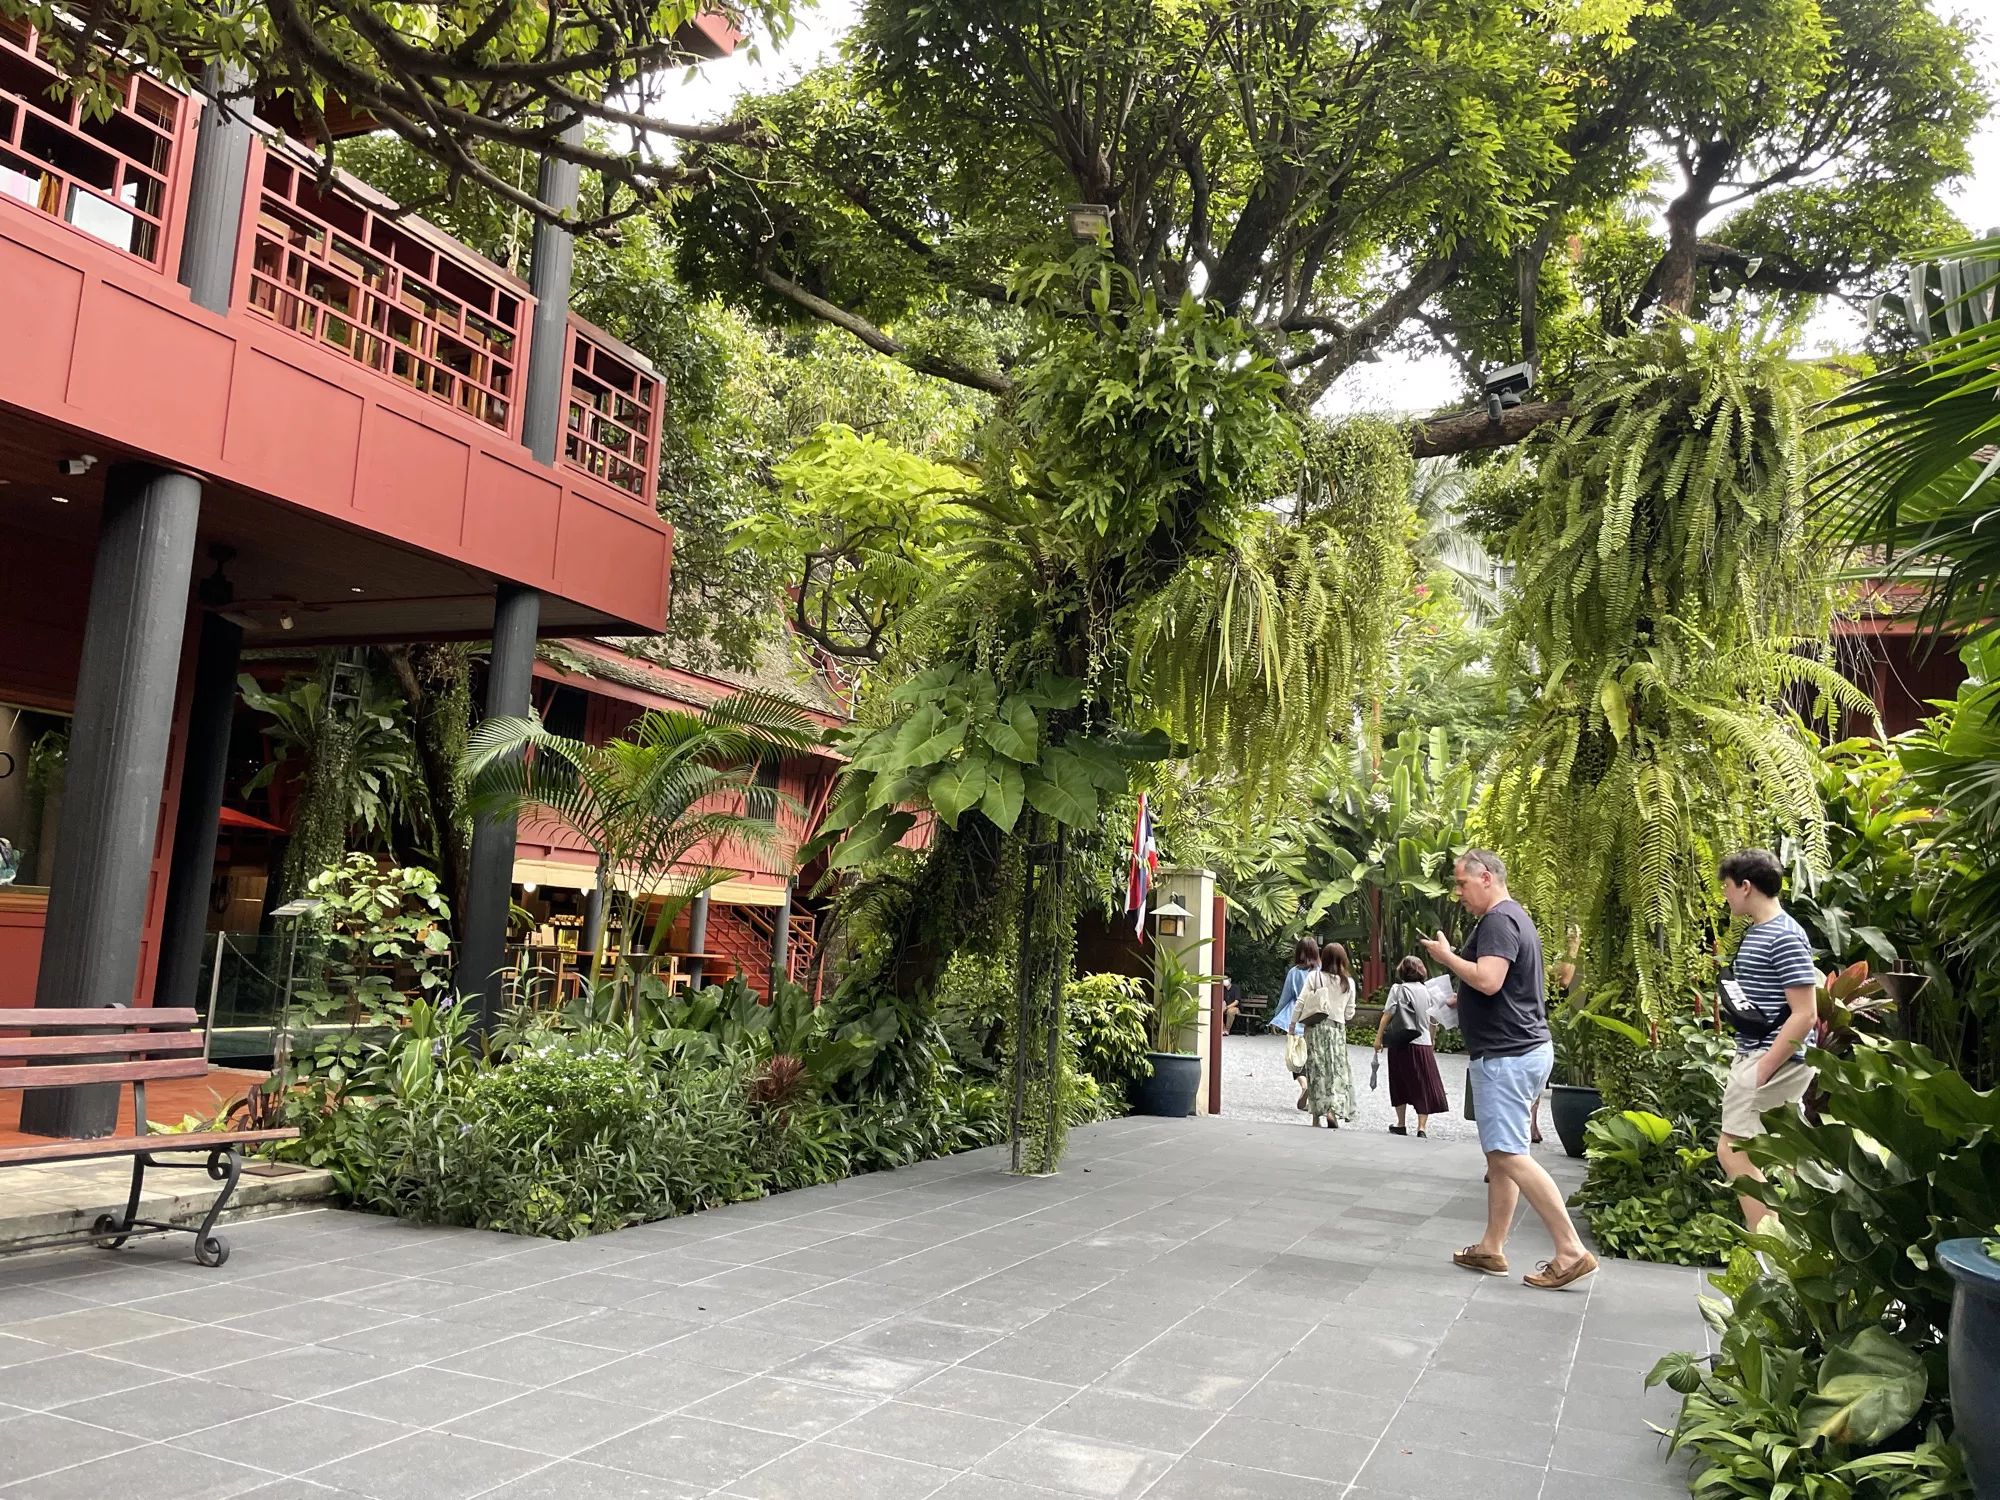 <p>Небольшой сад с тропическими растениями рядом с домом-музеем Томпсона открыт для всех посетителей совершенно бесплатно. Там можно не просто отдохнуть, но и скрыться от изнуряющих солнечных лучей под густой растительностью</p>